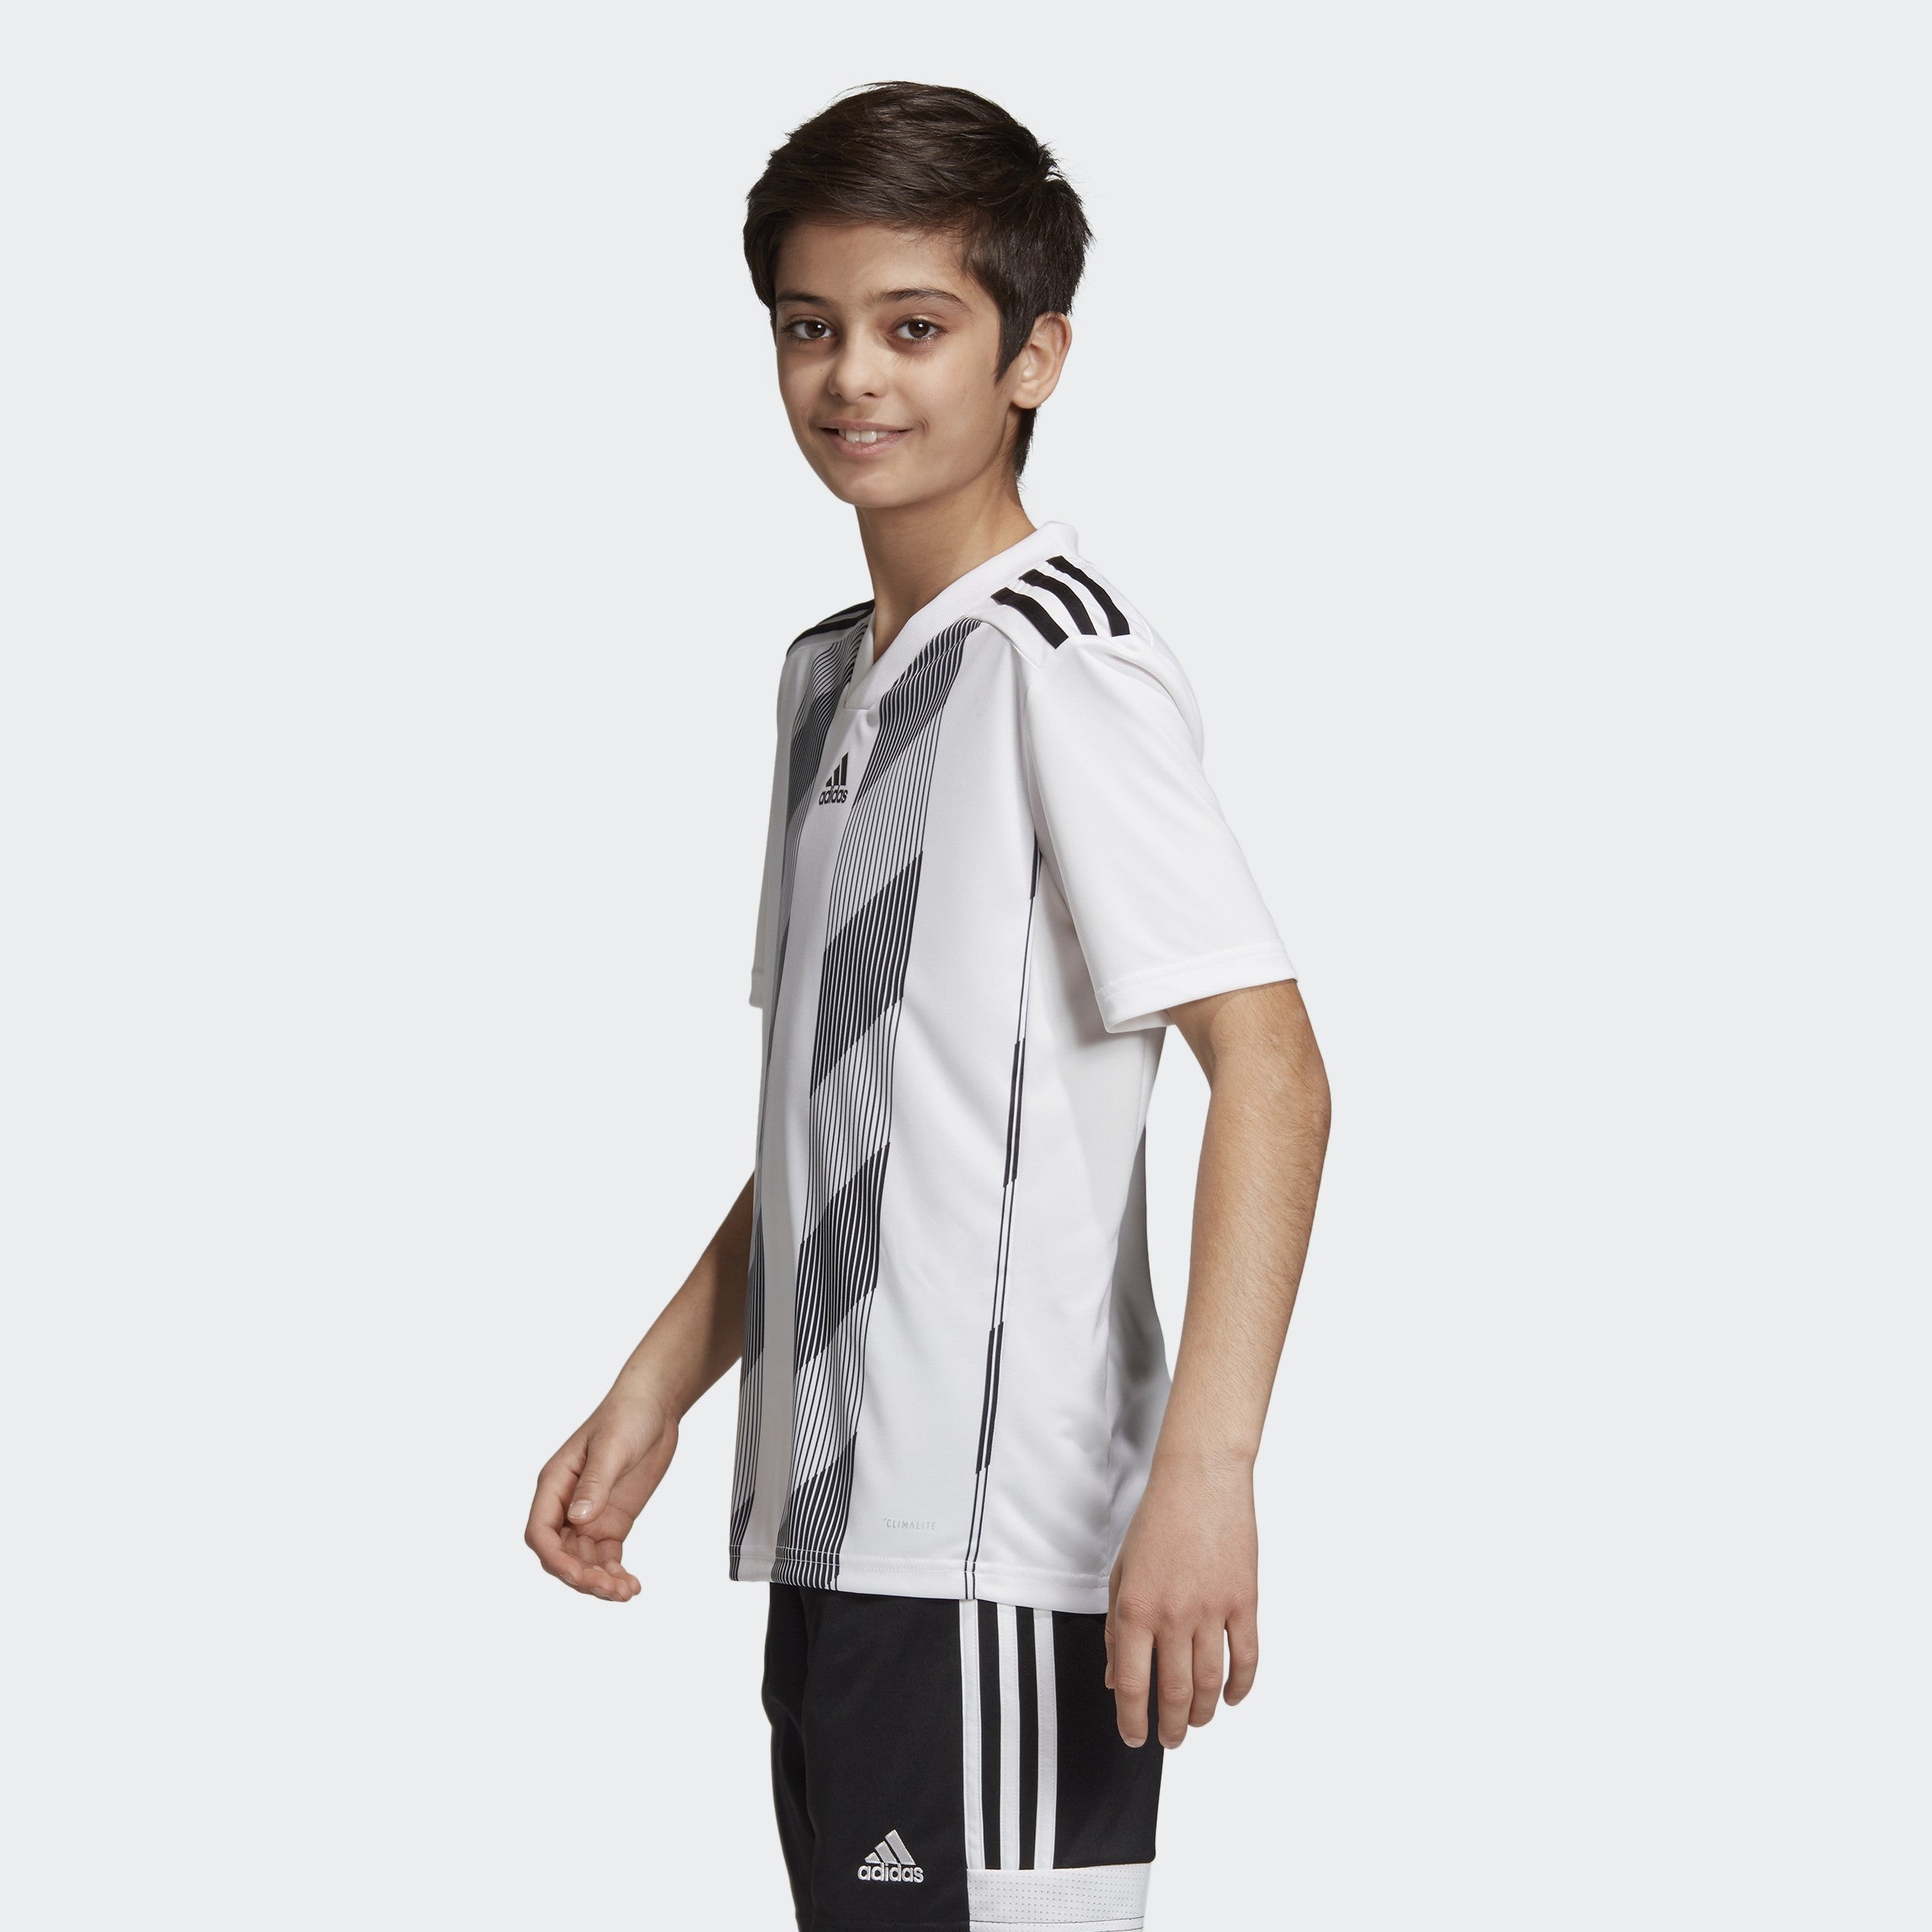 Melodramatisch badminton Specialiseren Youth Striped 19 Jersey-White / Black